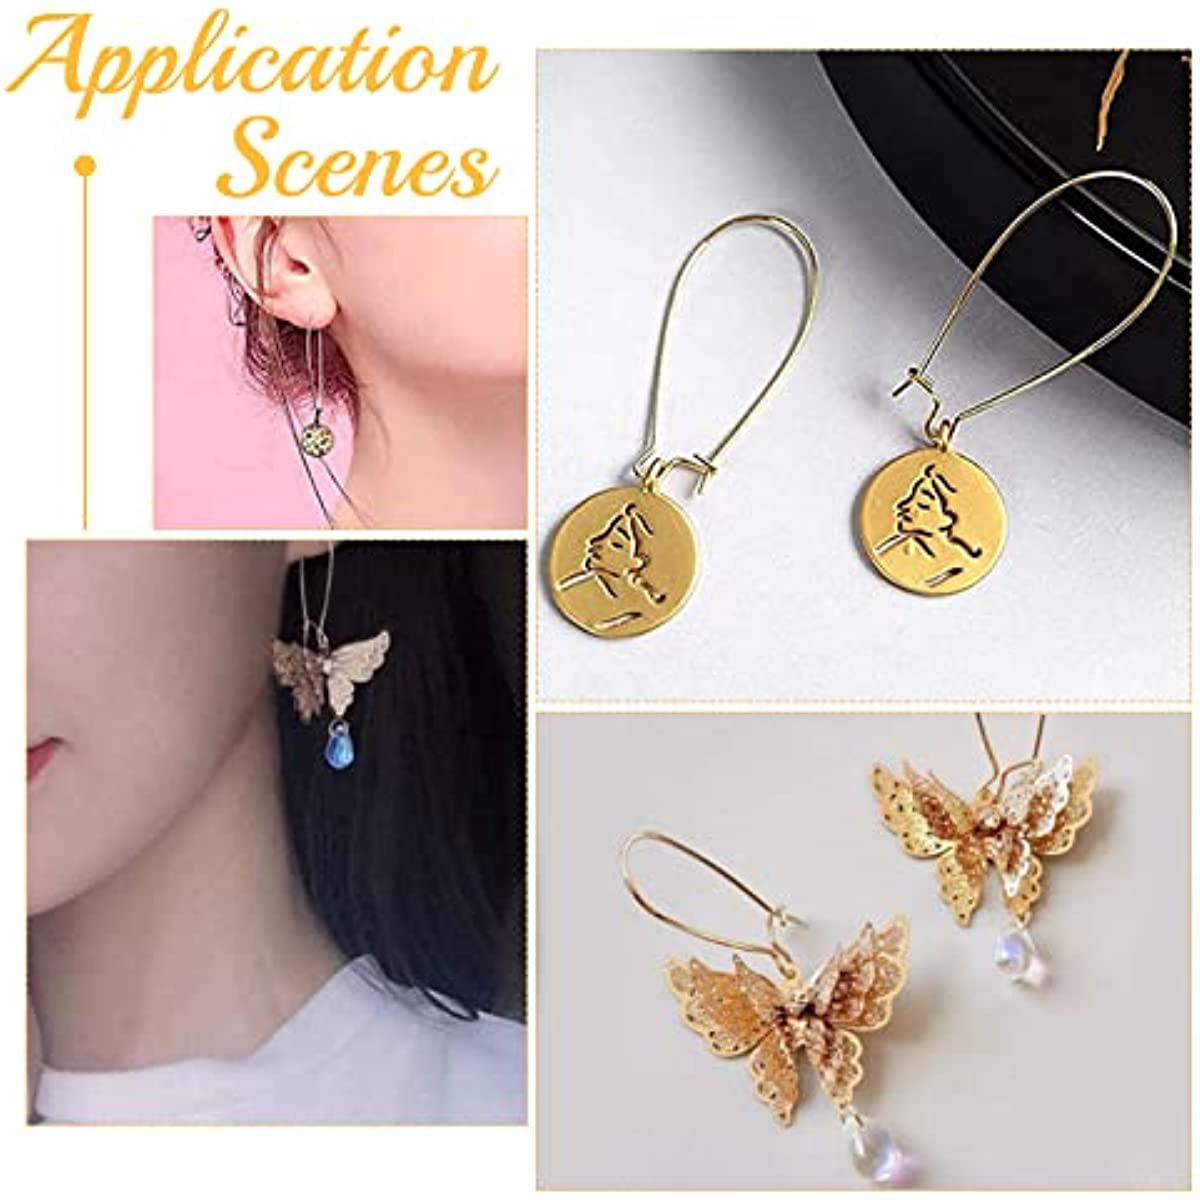 100pcs Plated Earring Hooks Kidney Earring Ear Wires Findings Diy Jewelry  Making | eBay